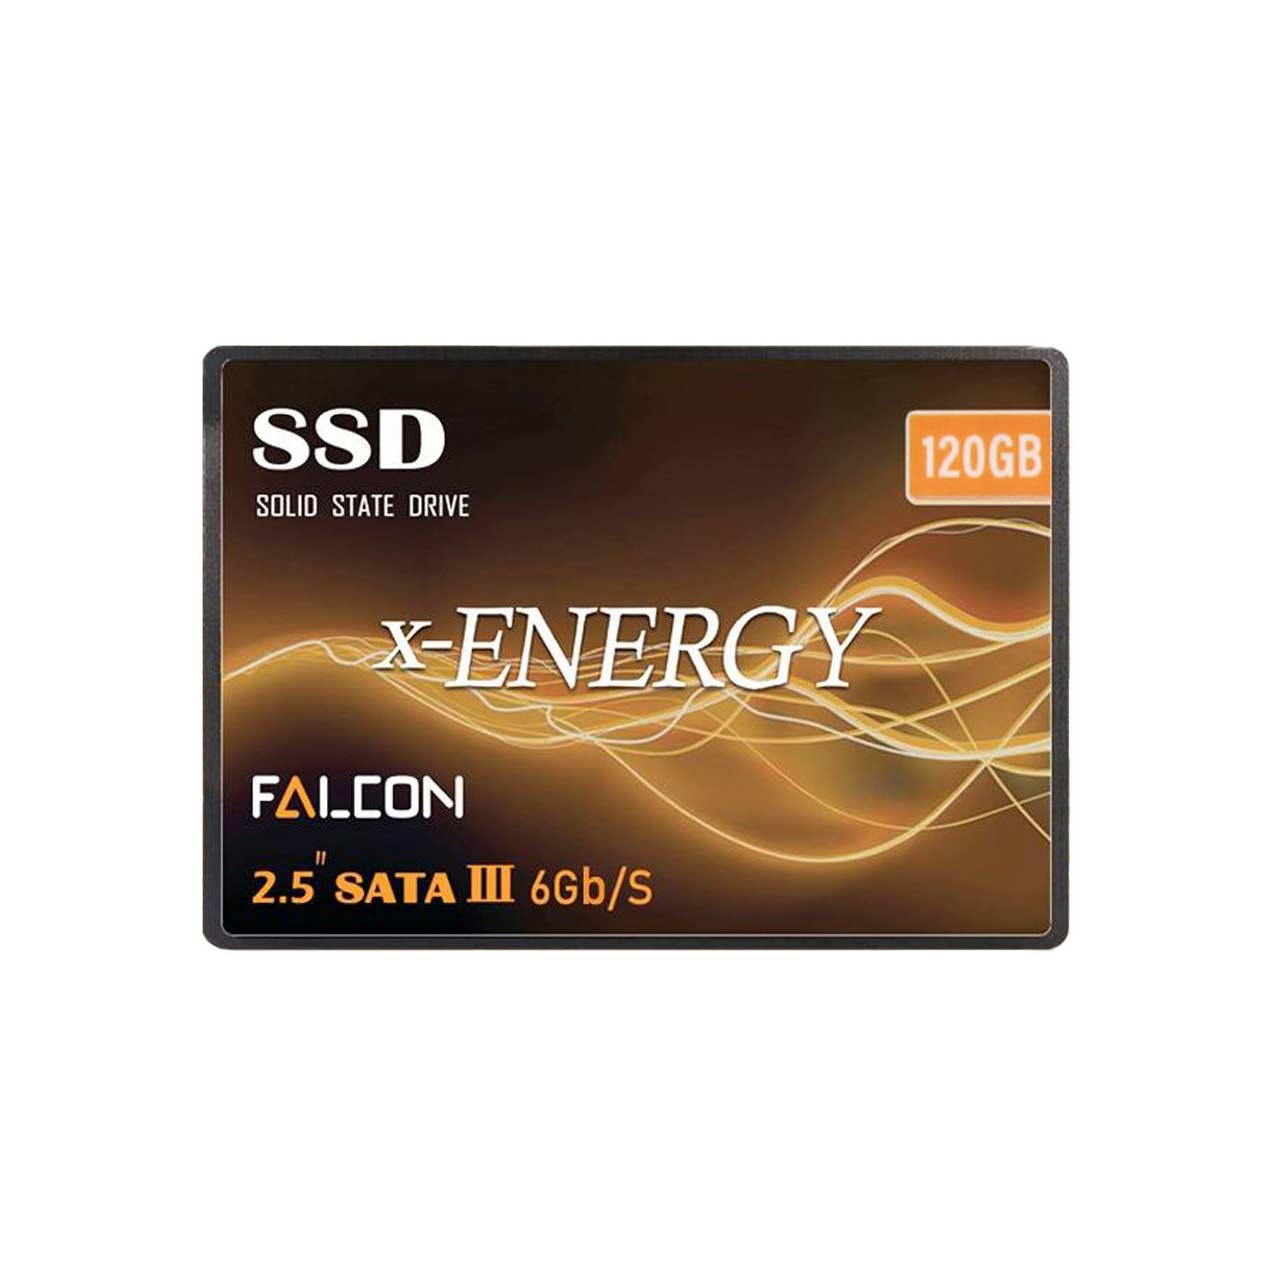 هارد X-ENERGY SSD مدل Falcon ظرفیت 120GB - مشکی (گارانتی IPM)